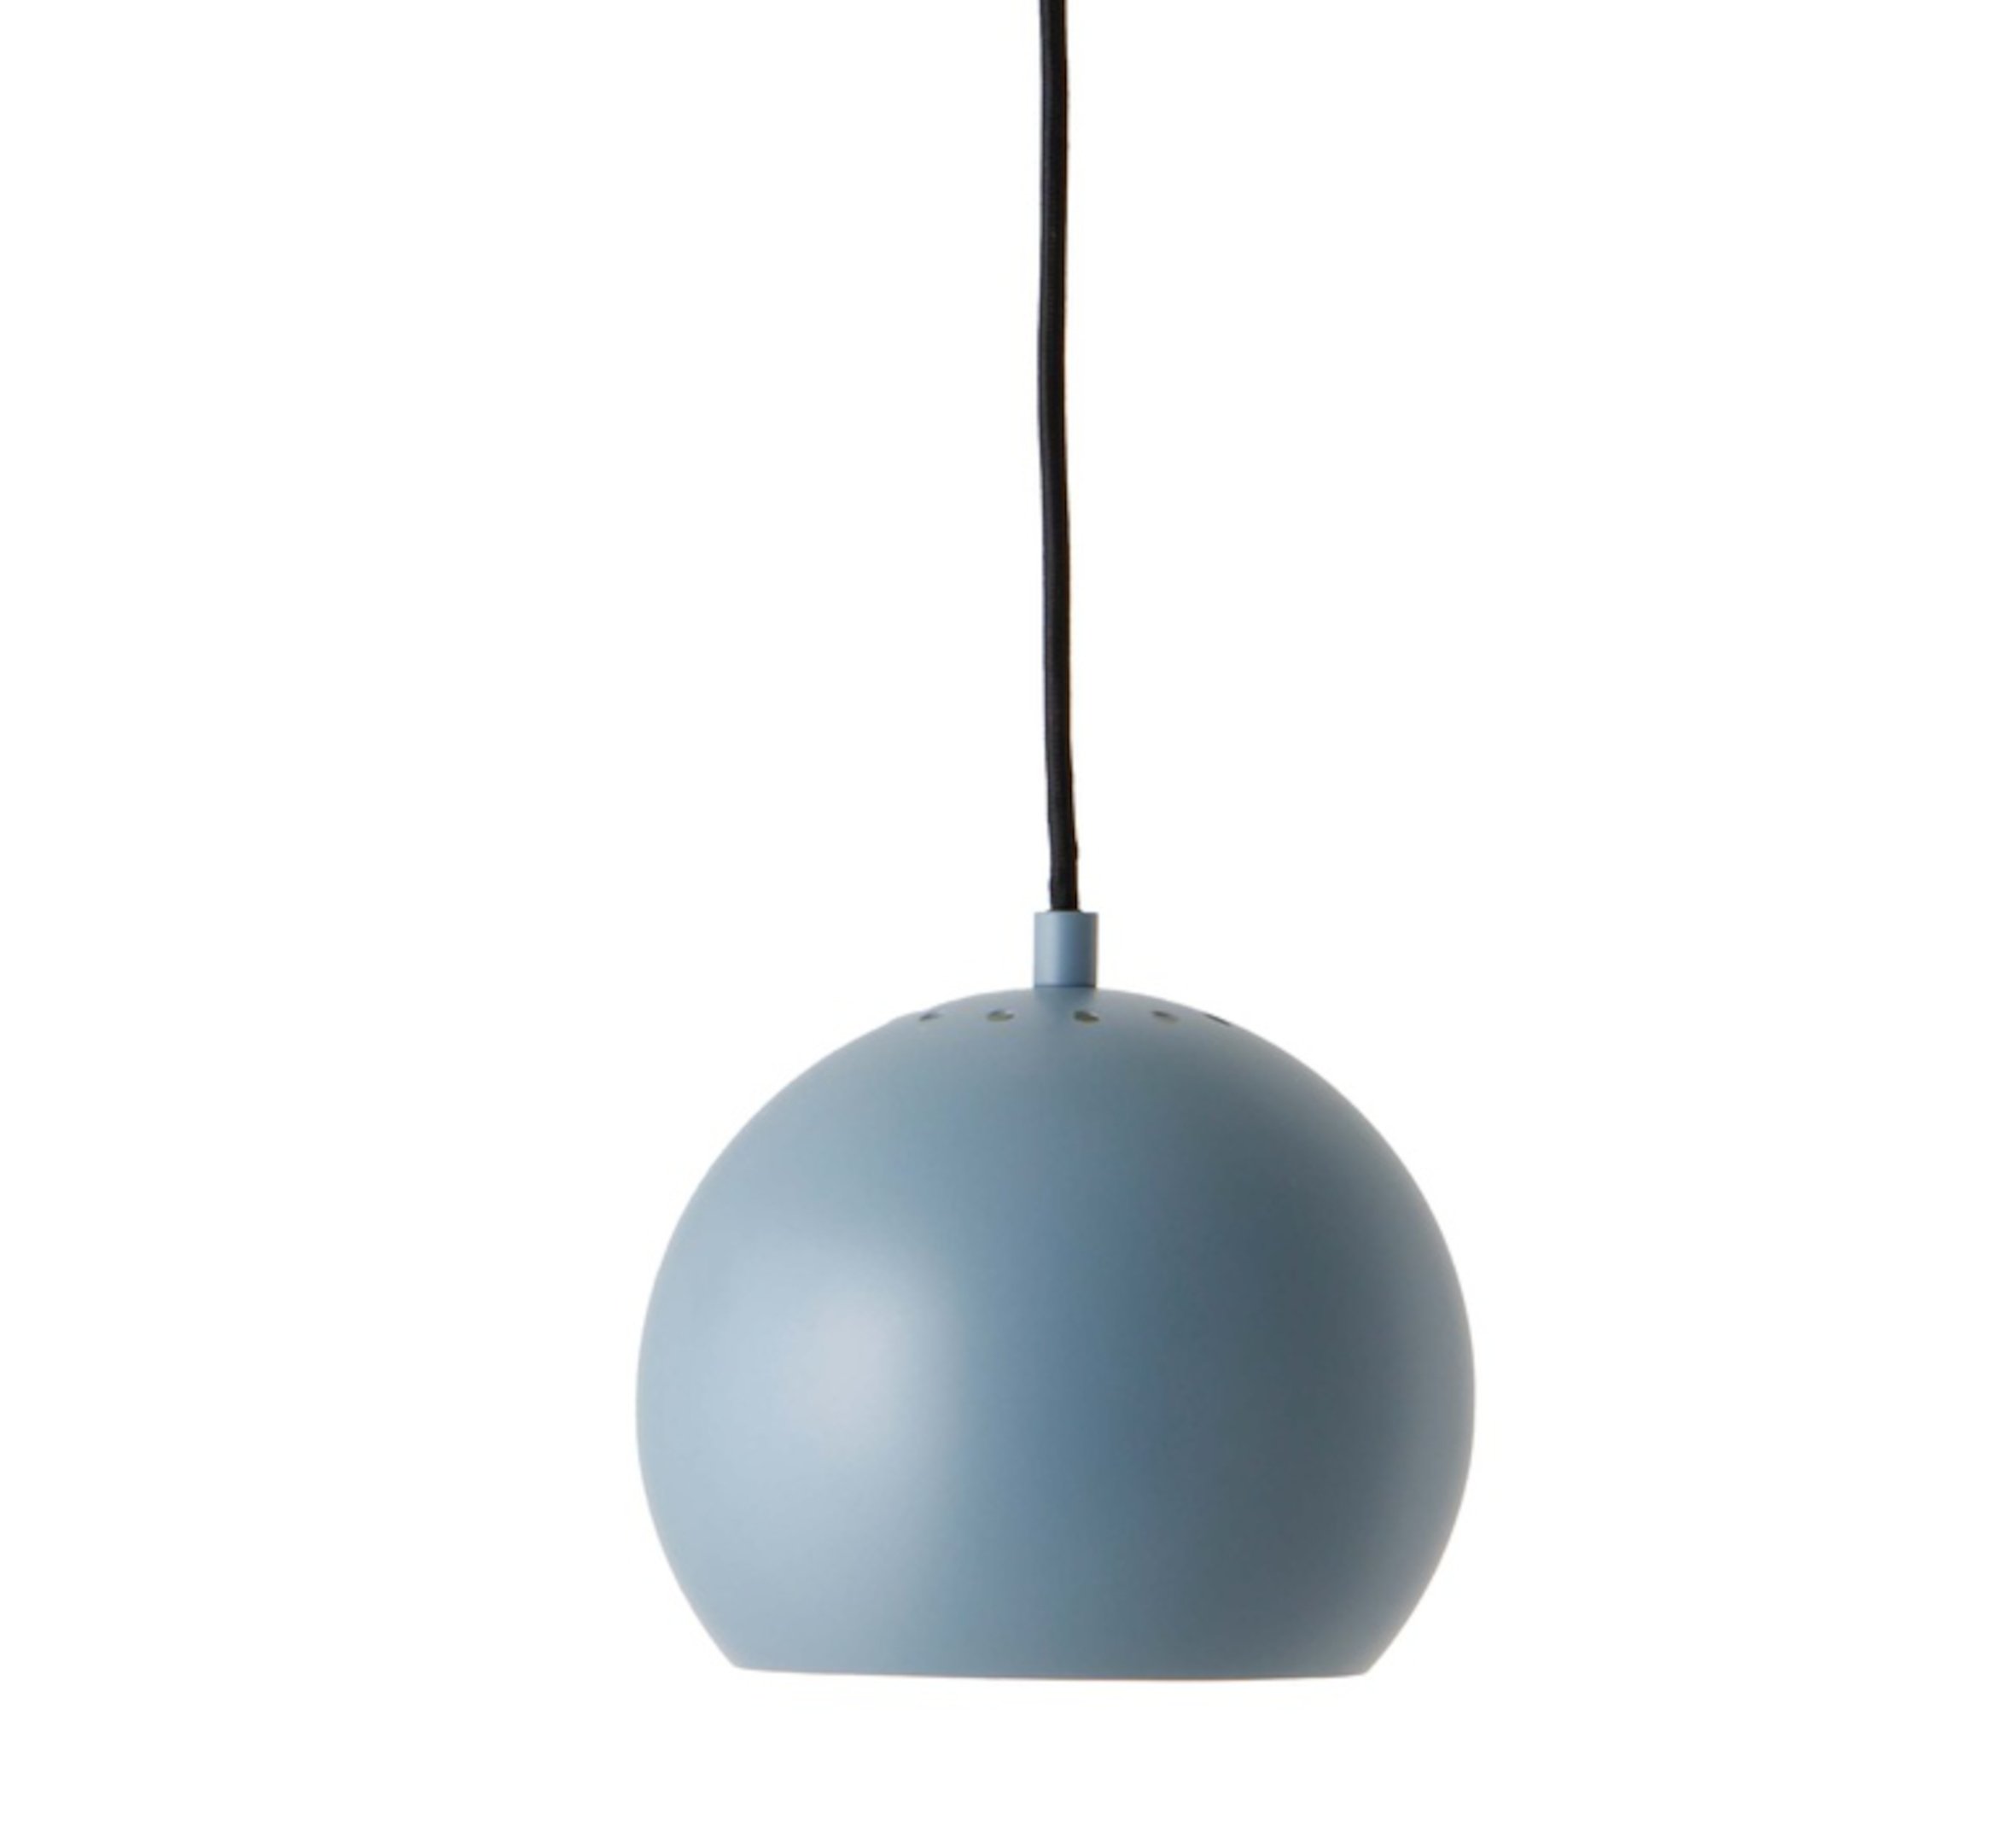 NEDGIS Suspension Ball Lamp (Citadel Blue) €90